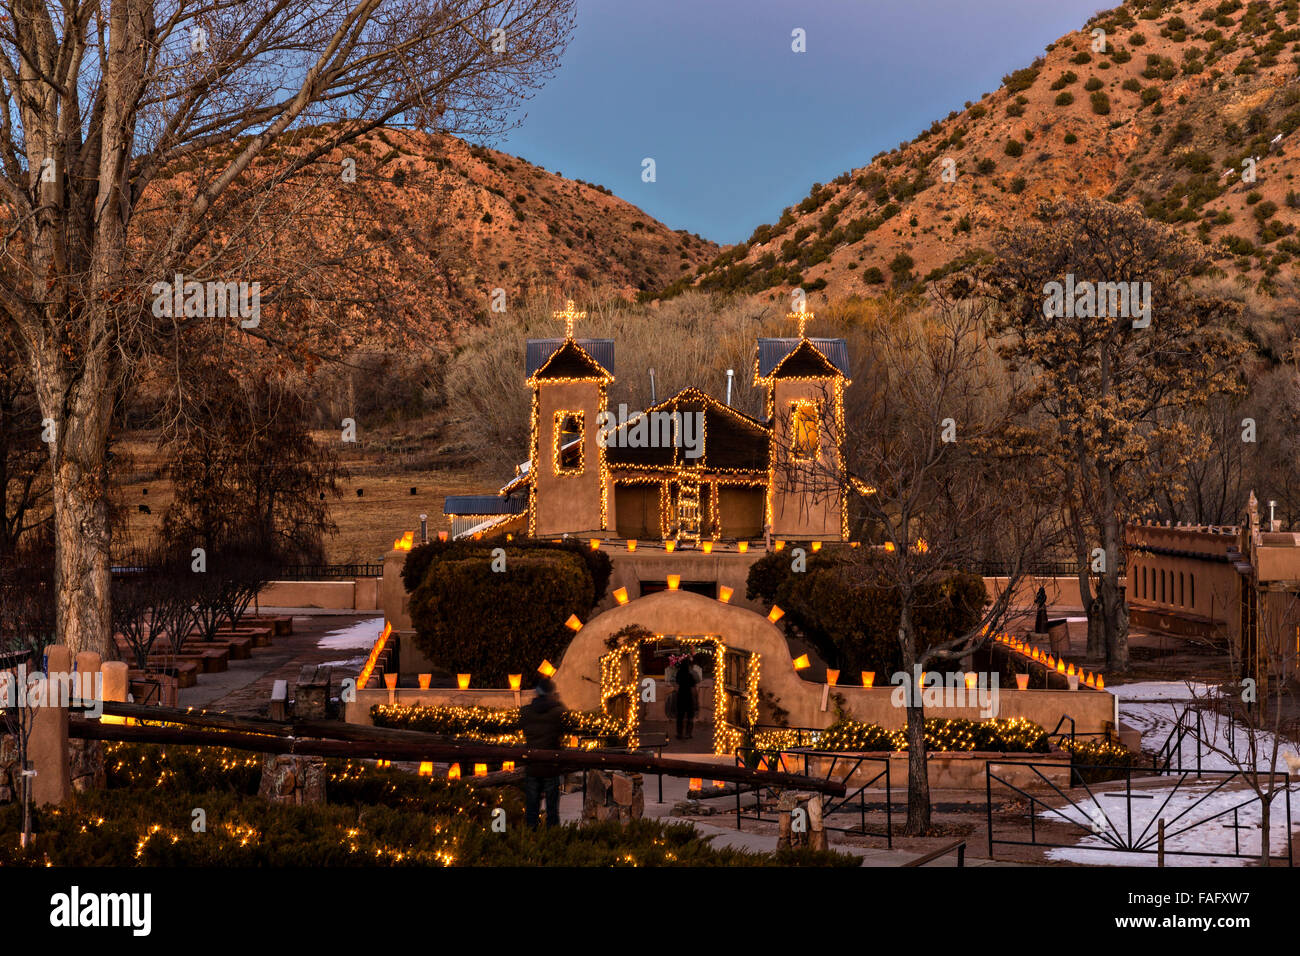 El Santuario de Chimayó Historic Site illuminée par des centaines de petites lanternes en papier appelé luminaria pour célébrer les fêtes de fin Décembre 13, 2015 dans Jemez Springs, New Mexico. Chaque année, 30 000 personnes des pèlerinages au sanctuaire. Banque D'Images